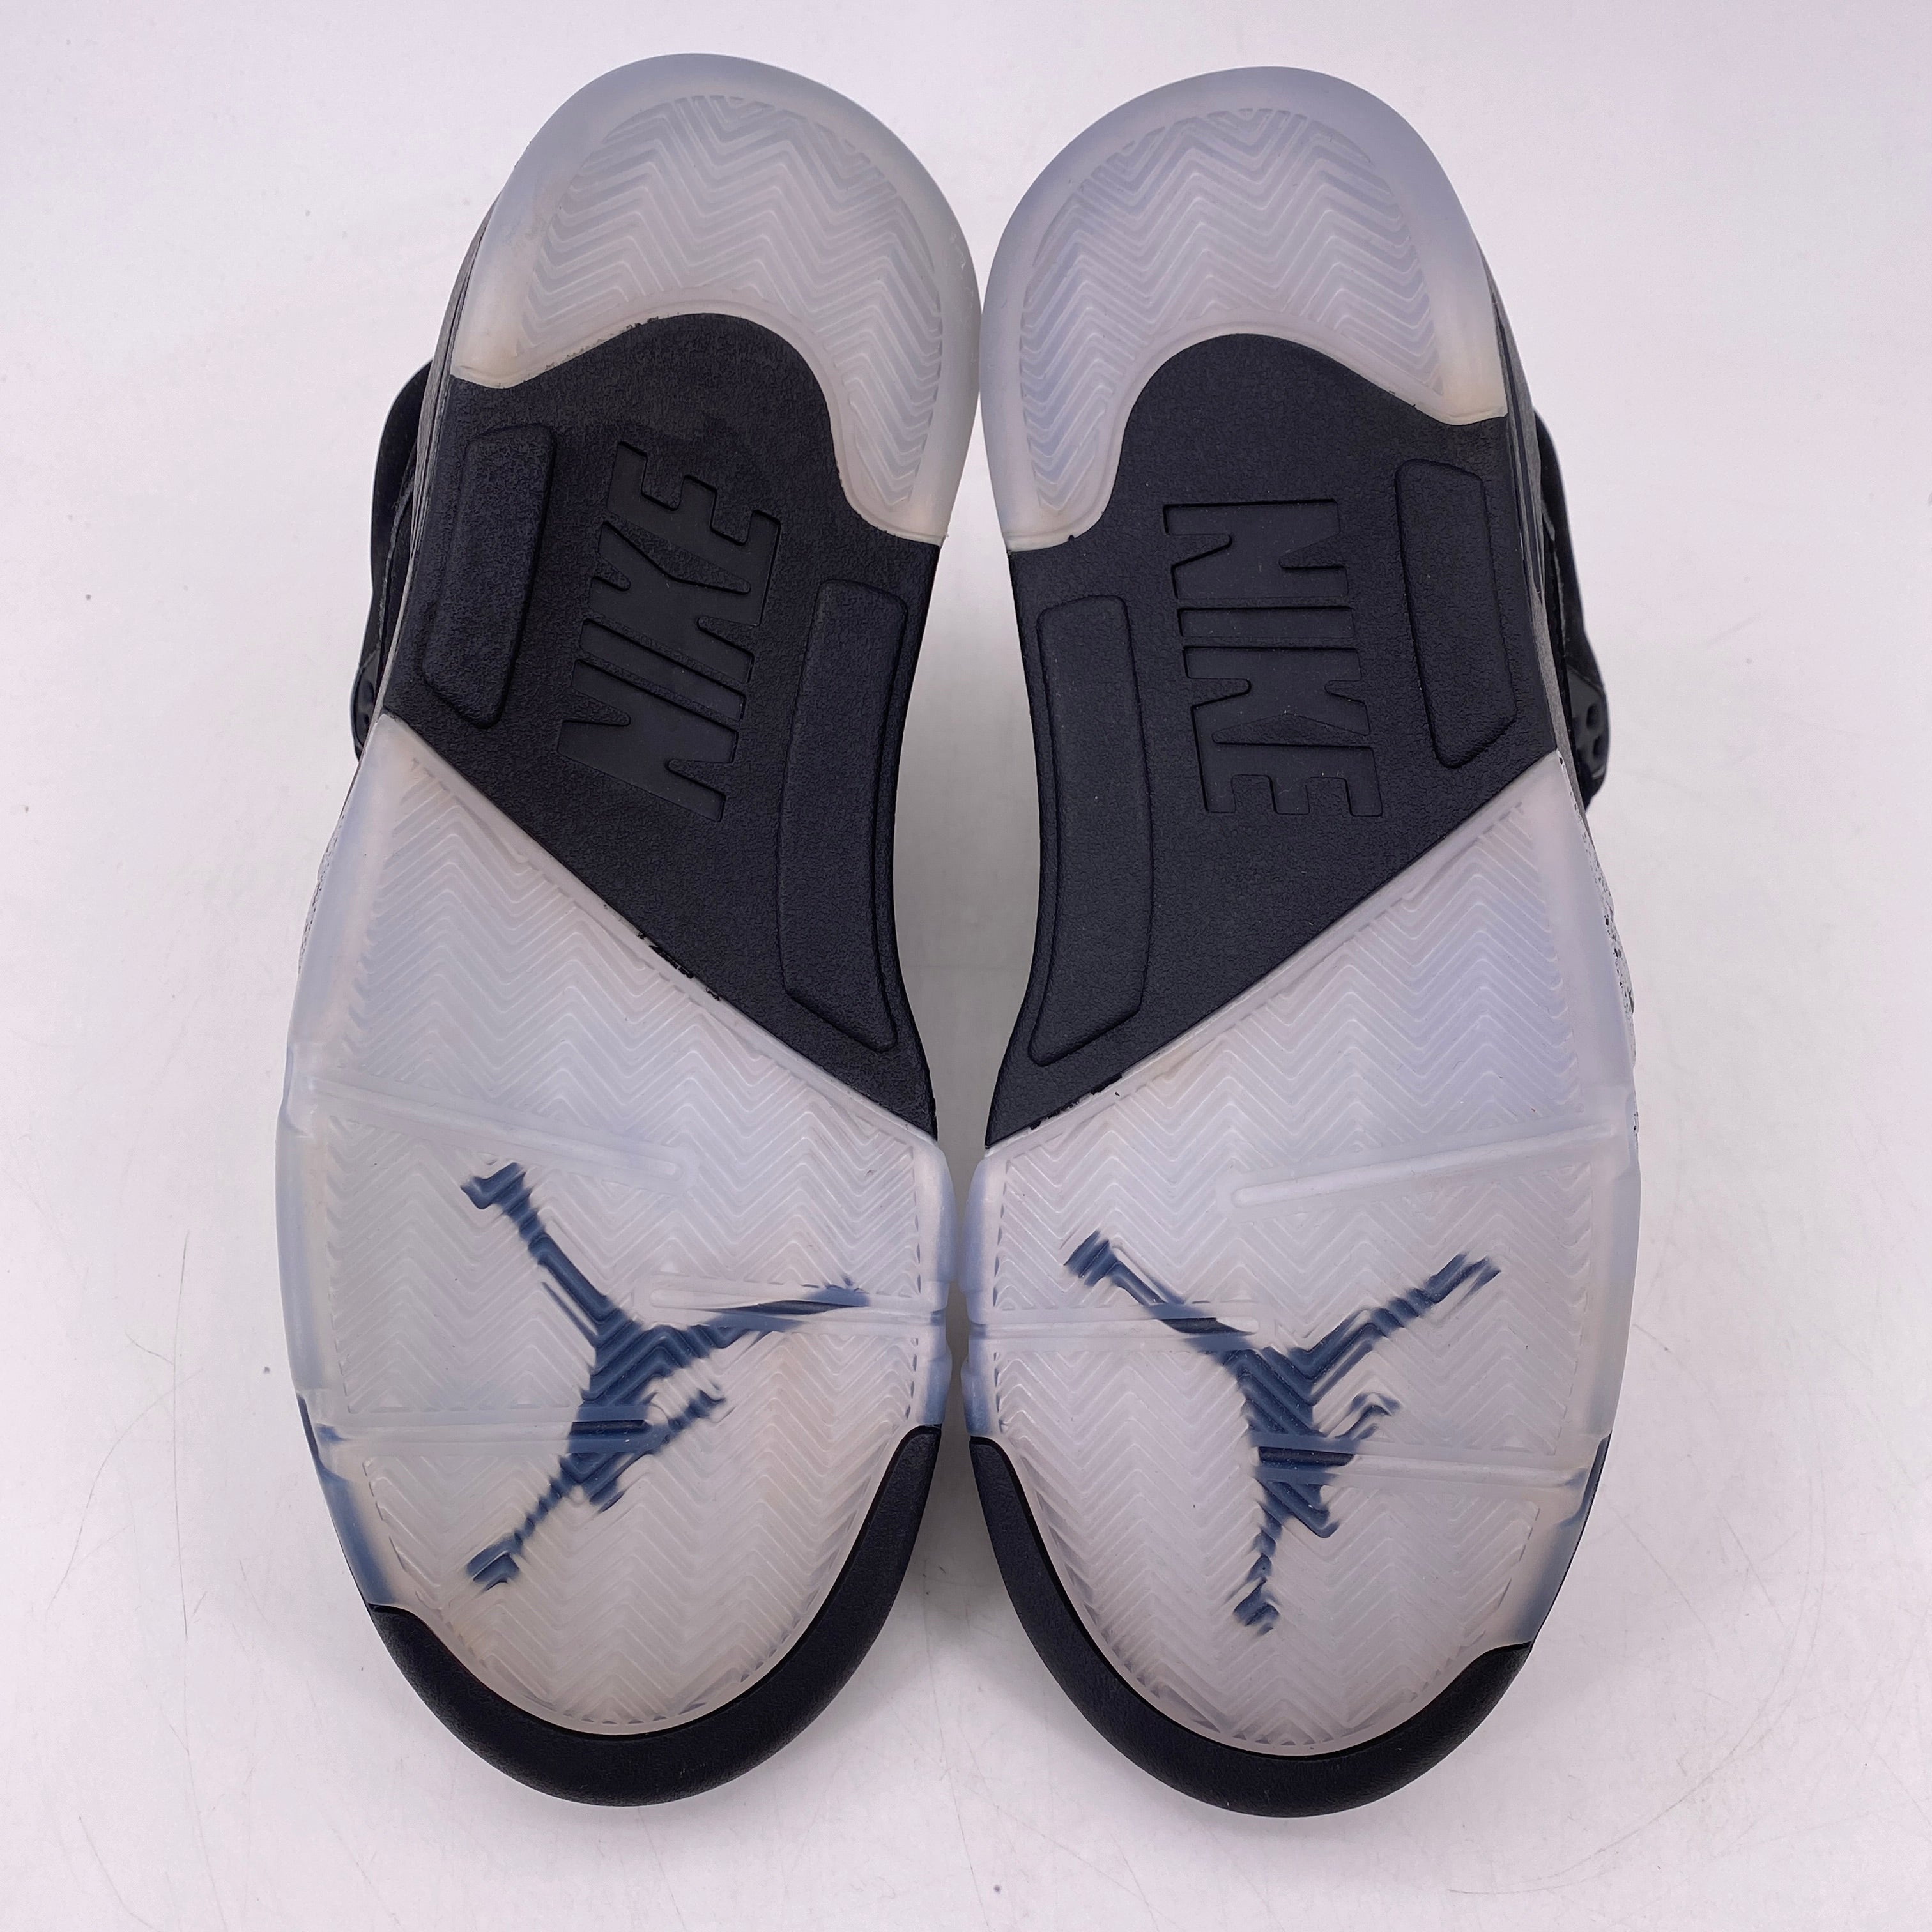 Air Jordan 5 Retro &quot;Black Metallic&quot; 2016 New Size 8.5